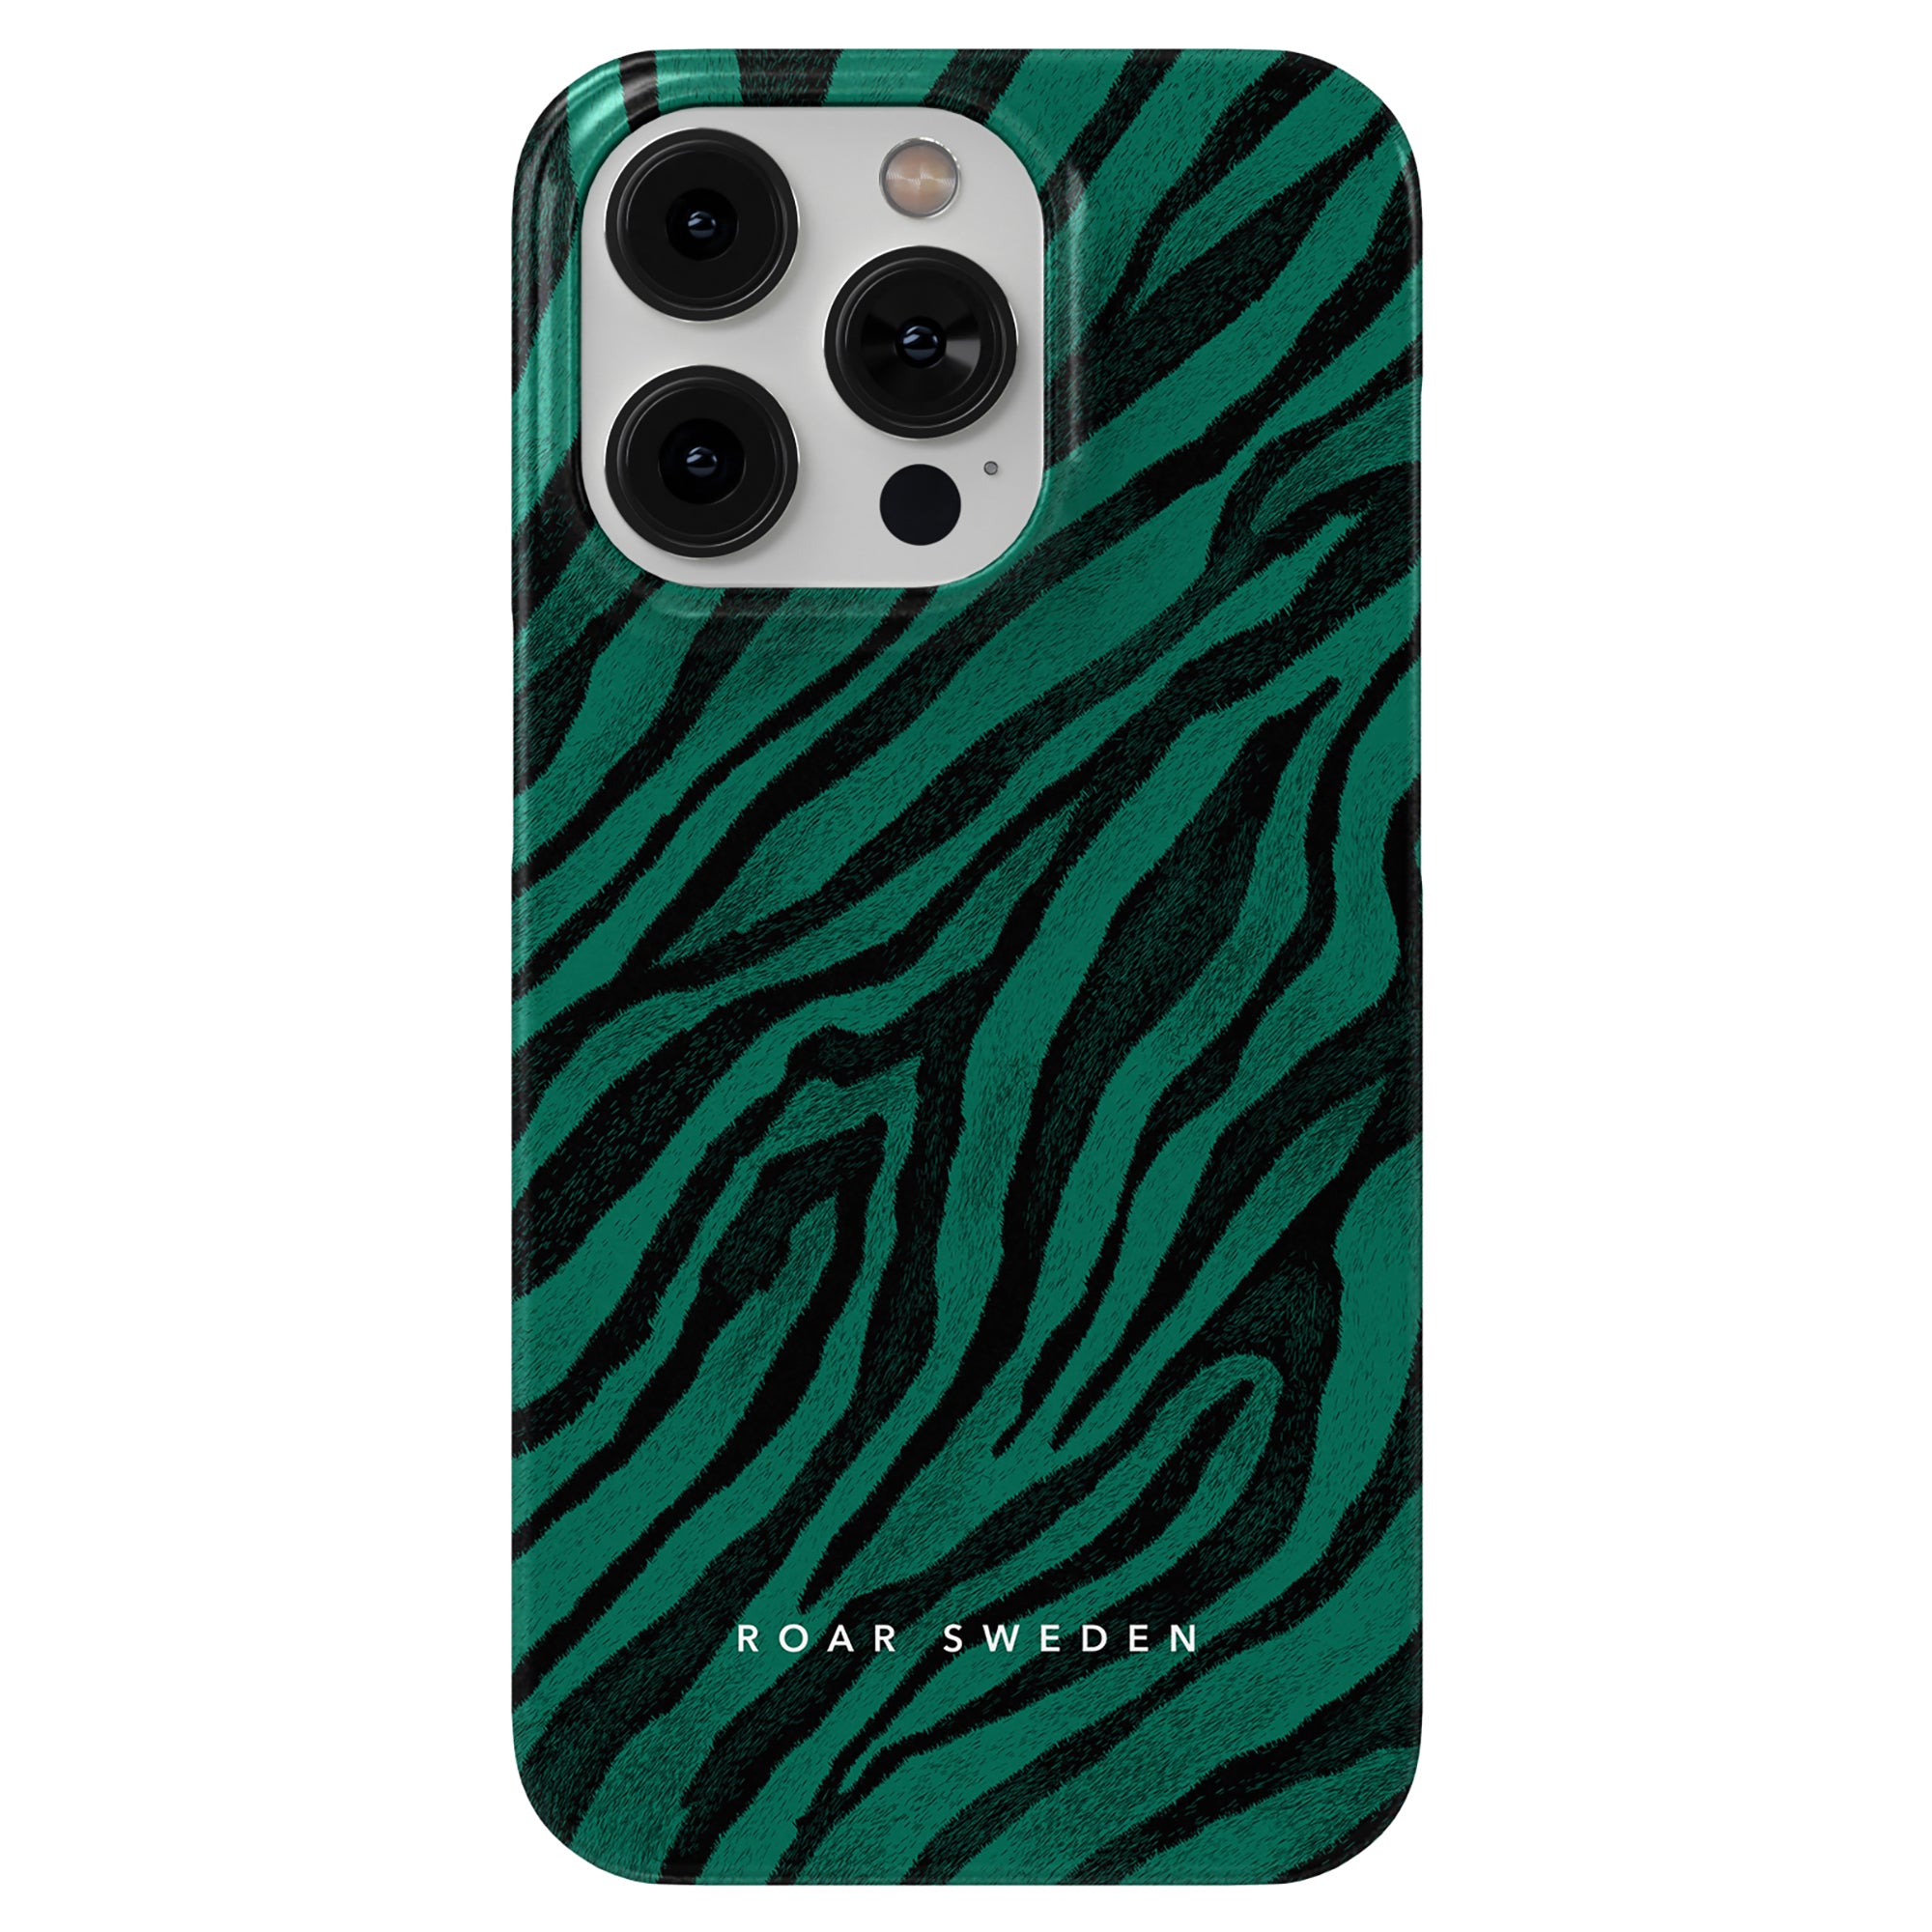 Ett djärva svarta streck och smaragdgrön nyans fodral för iPhone 11, känt som Nala - Slim fodral, har en livlig grön och svart zebra.